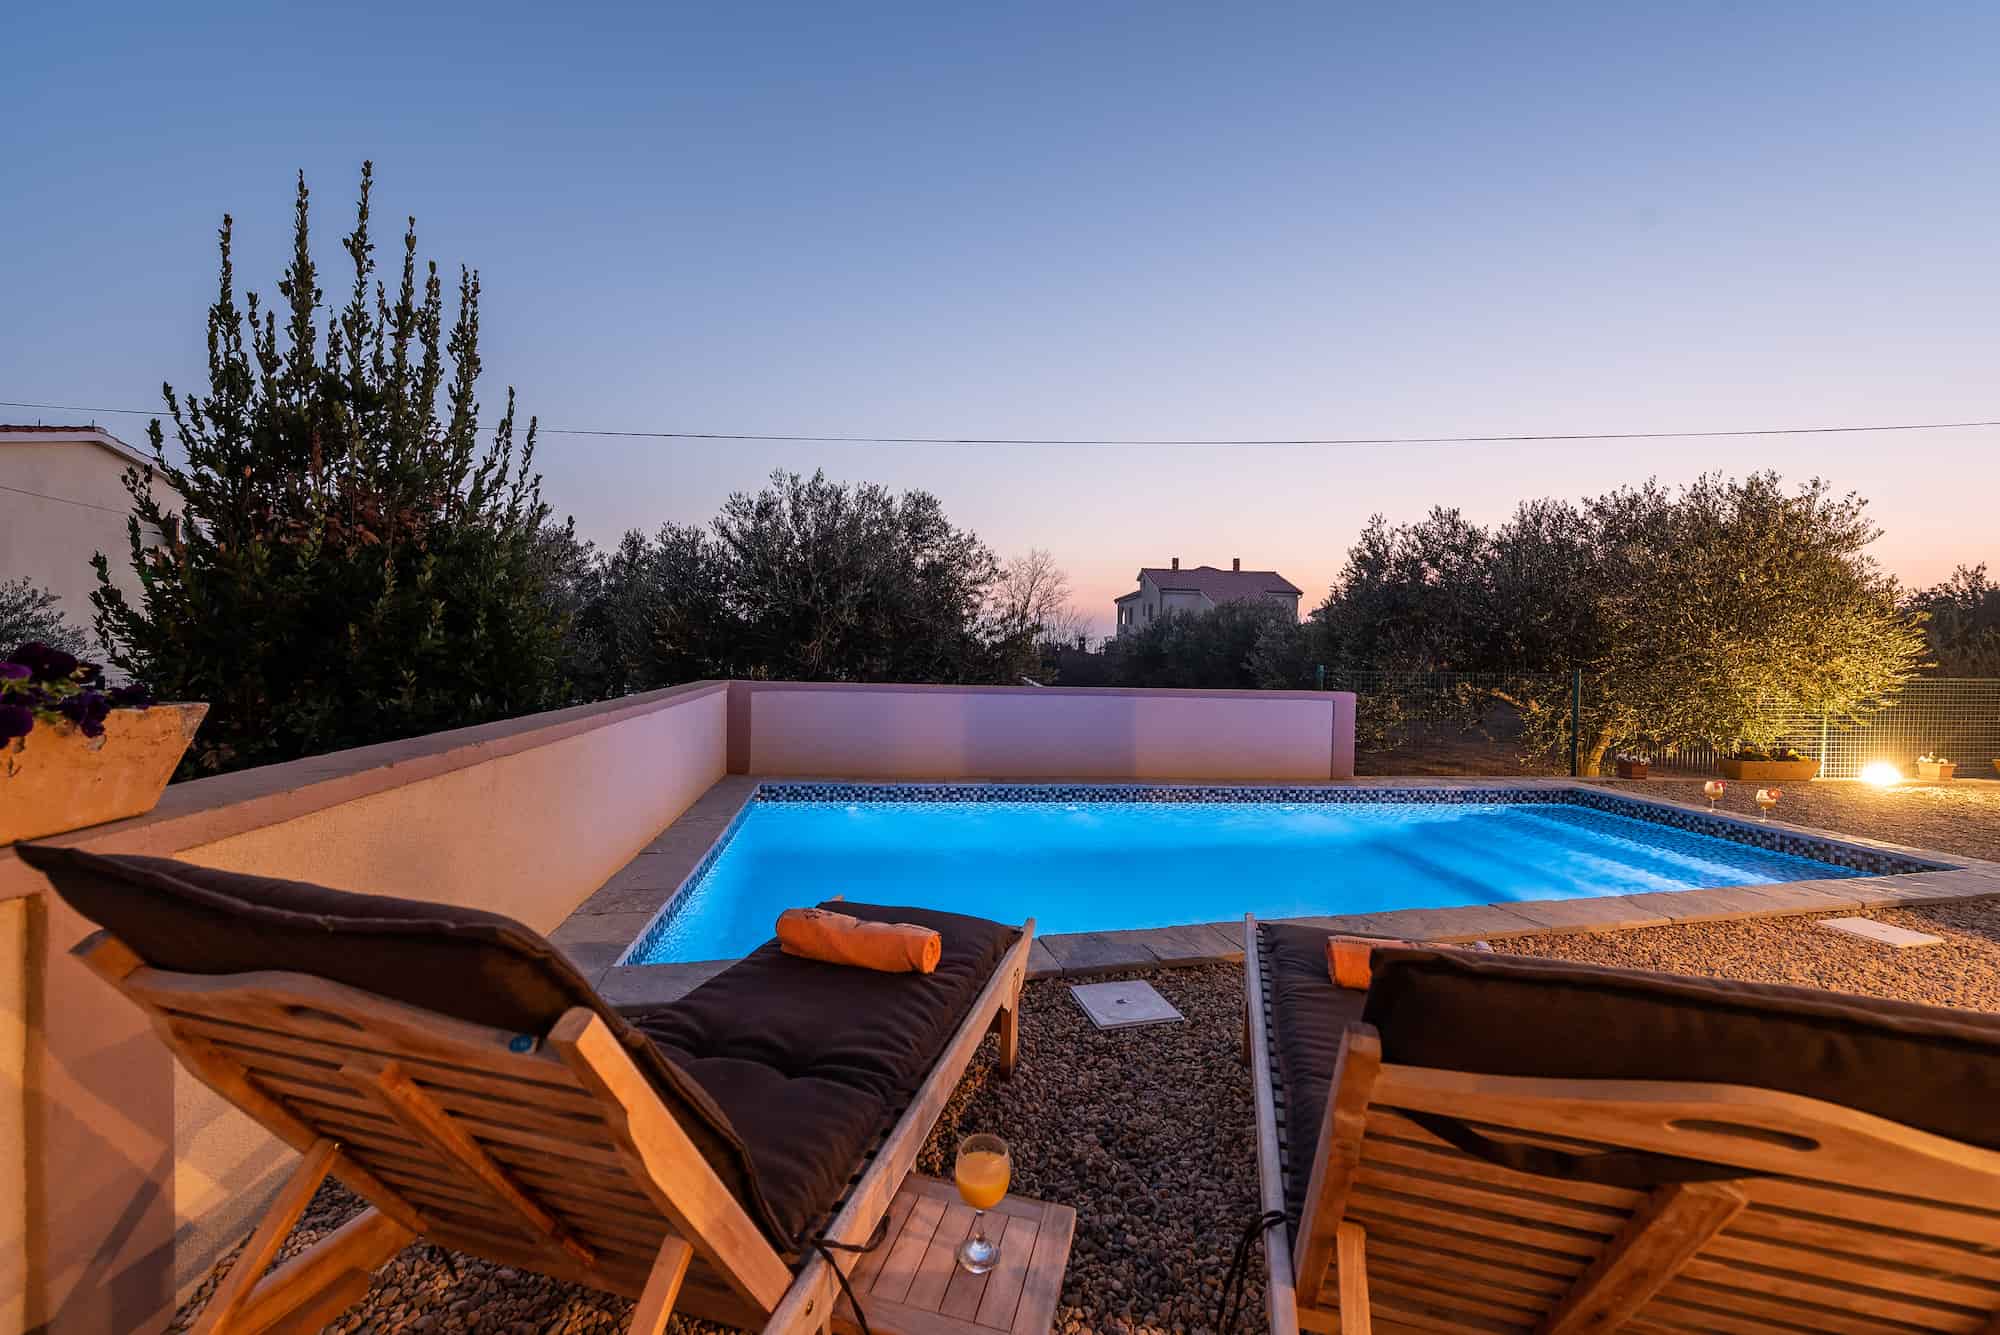 Ferienvilla mit Pool in Kroatien, Nachtbeleuchtung des Pools und Liegestühle